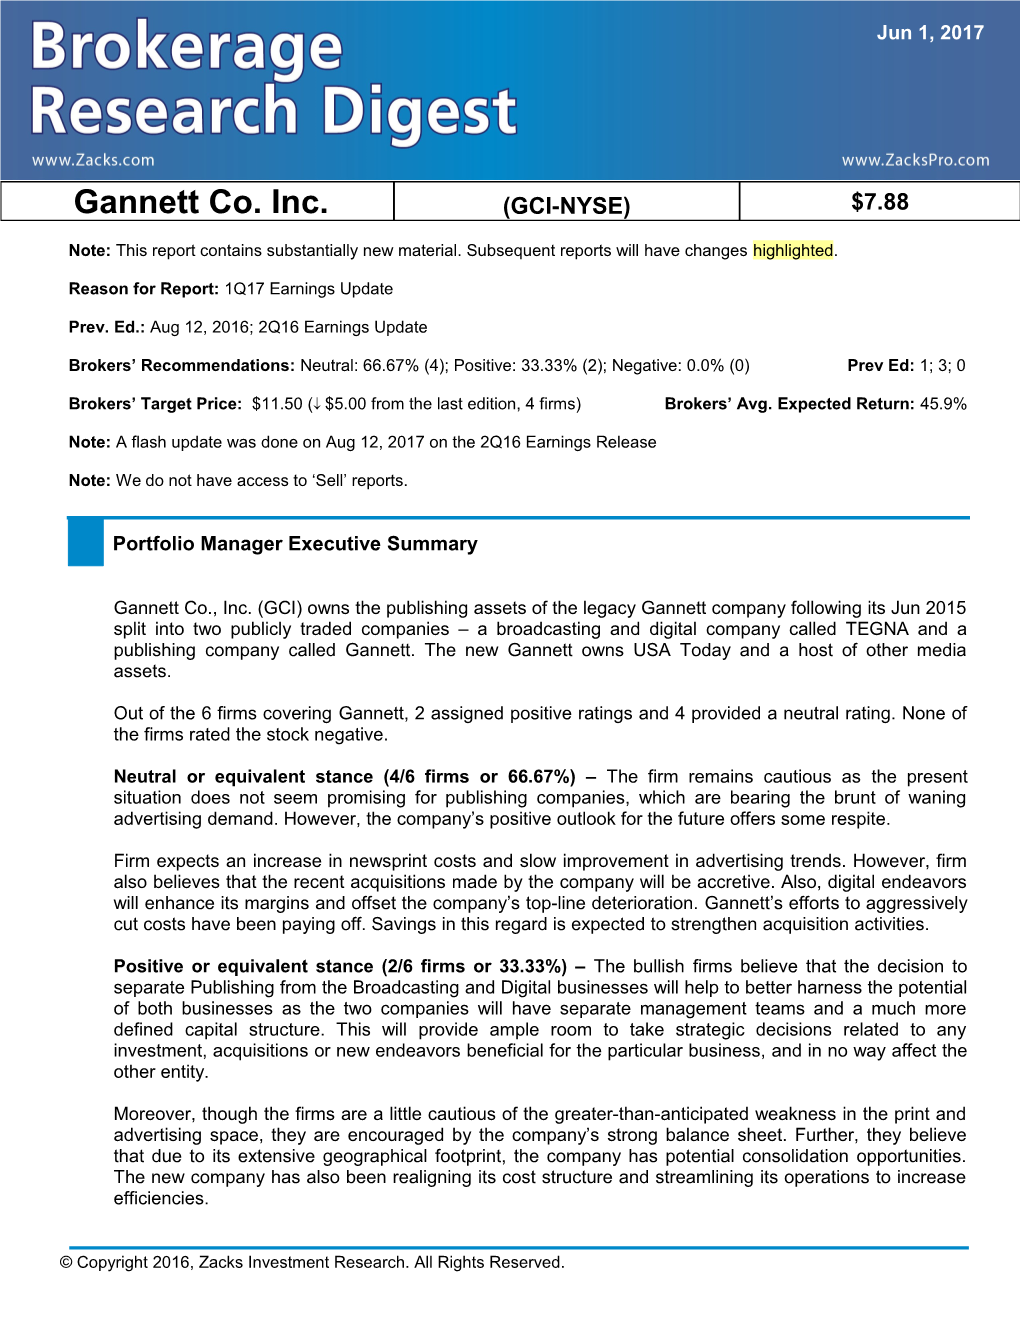 Gannett Co. Inc